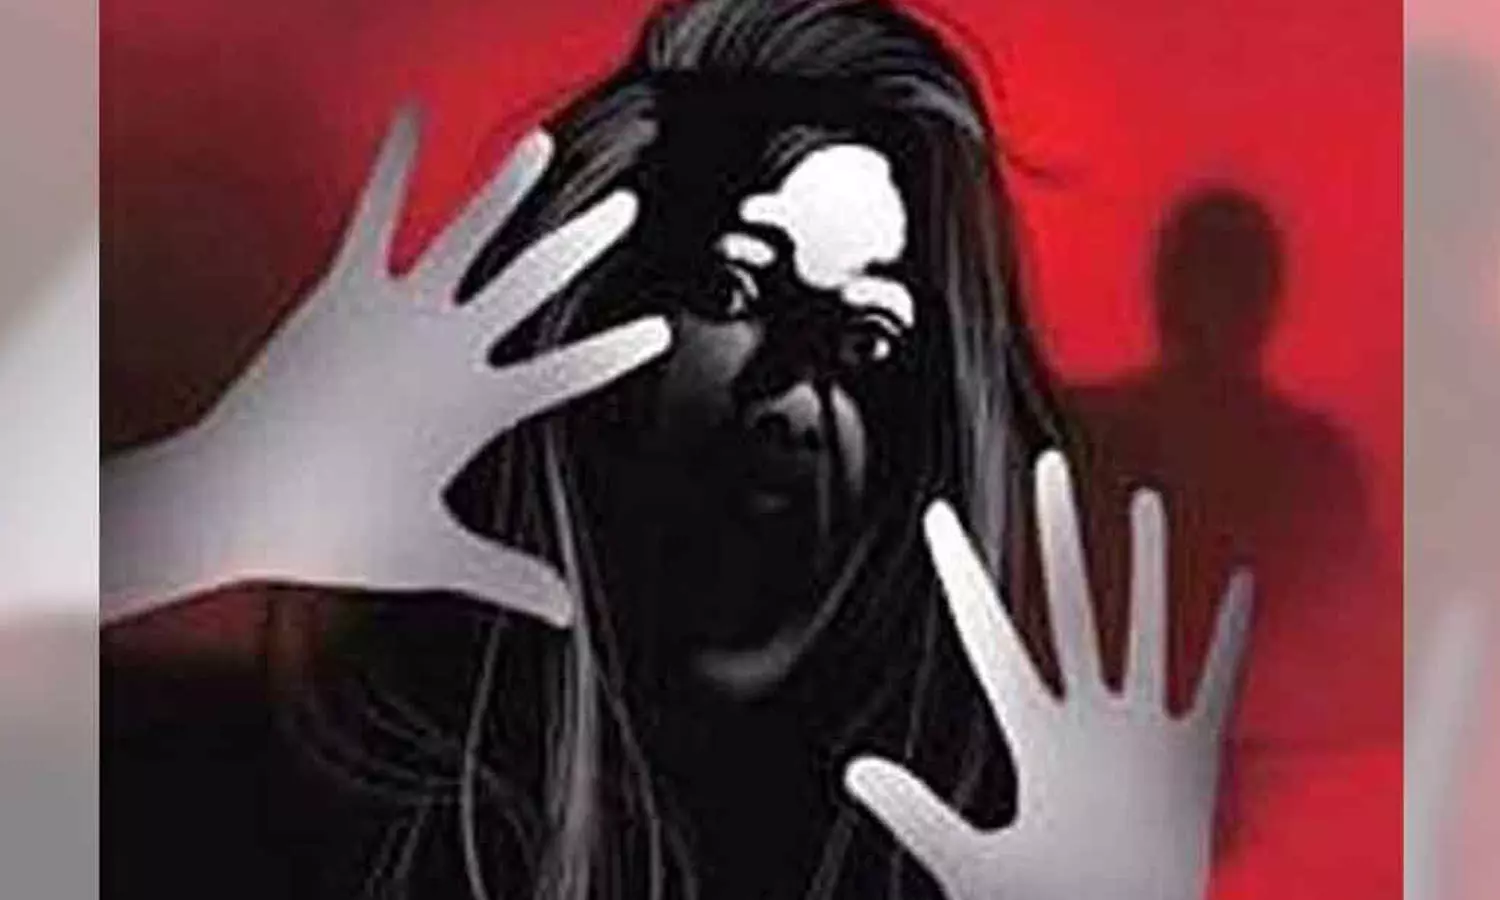 Home alone, woman raped in Banjara Hills